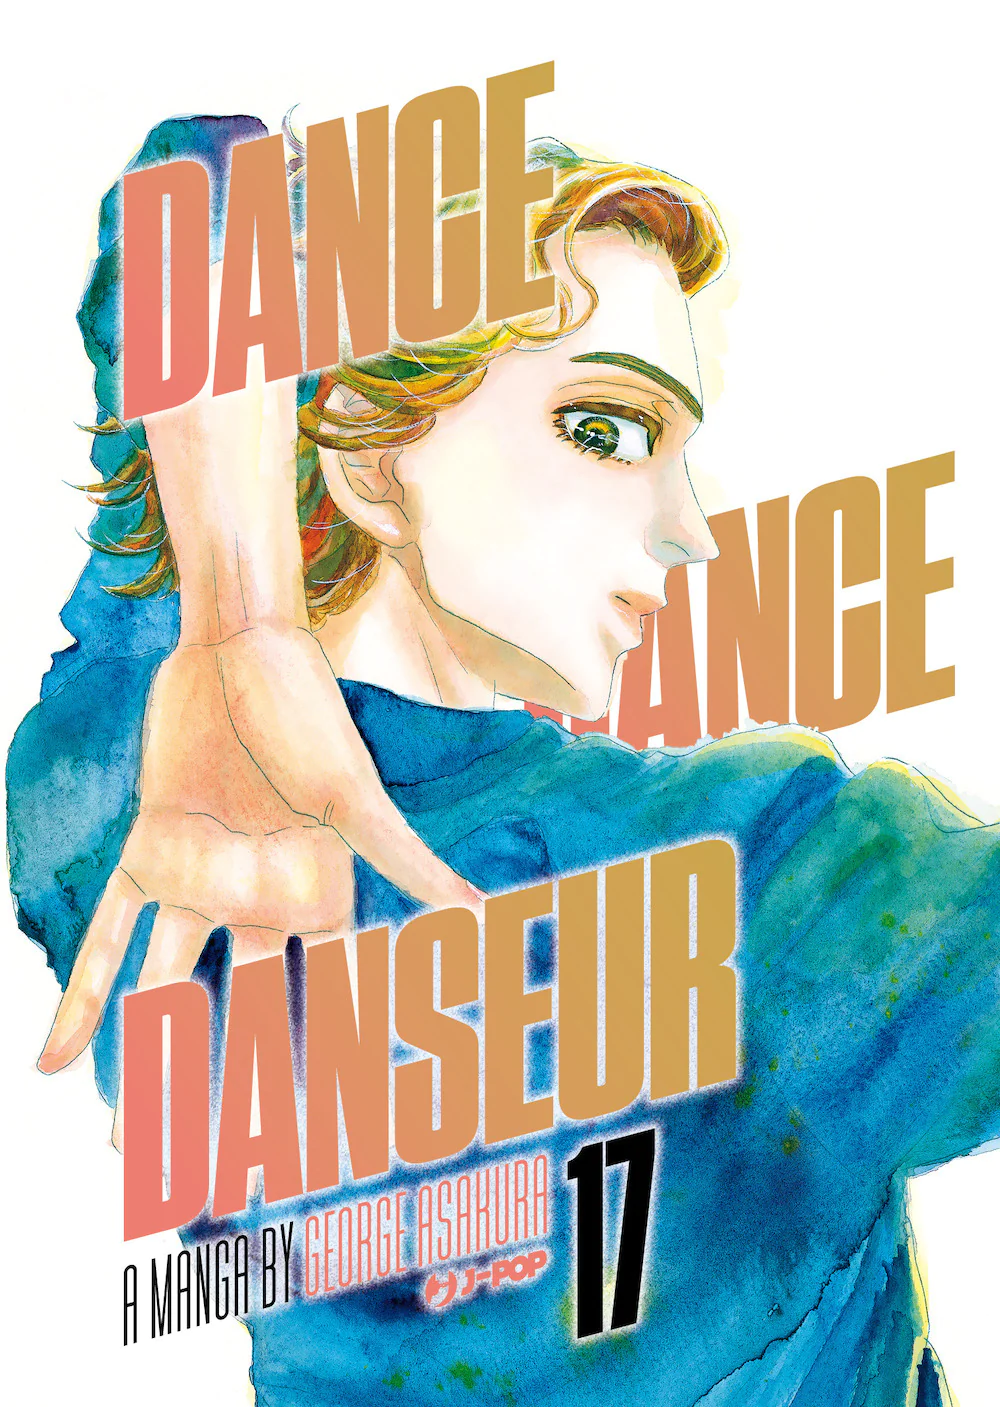 JPOP DANCE DANCE DANSEUR #017